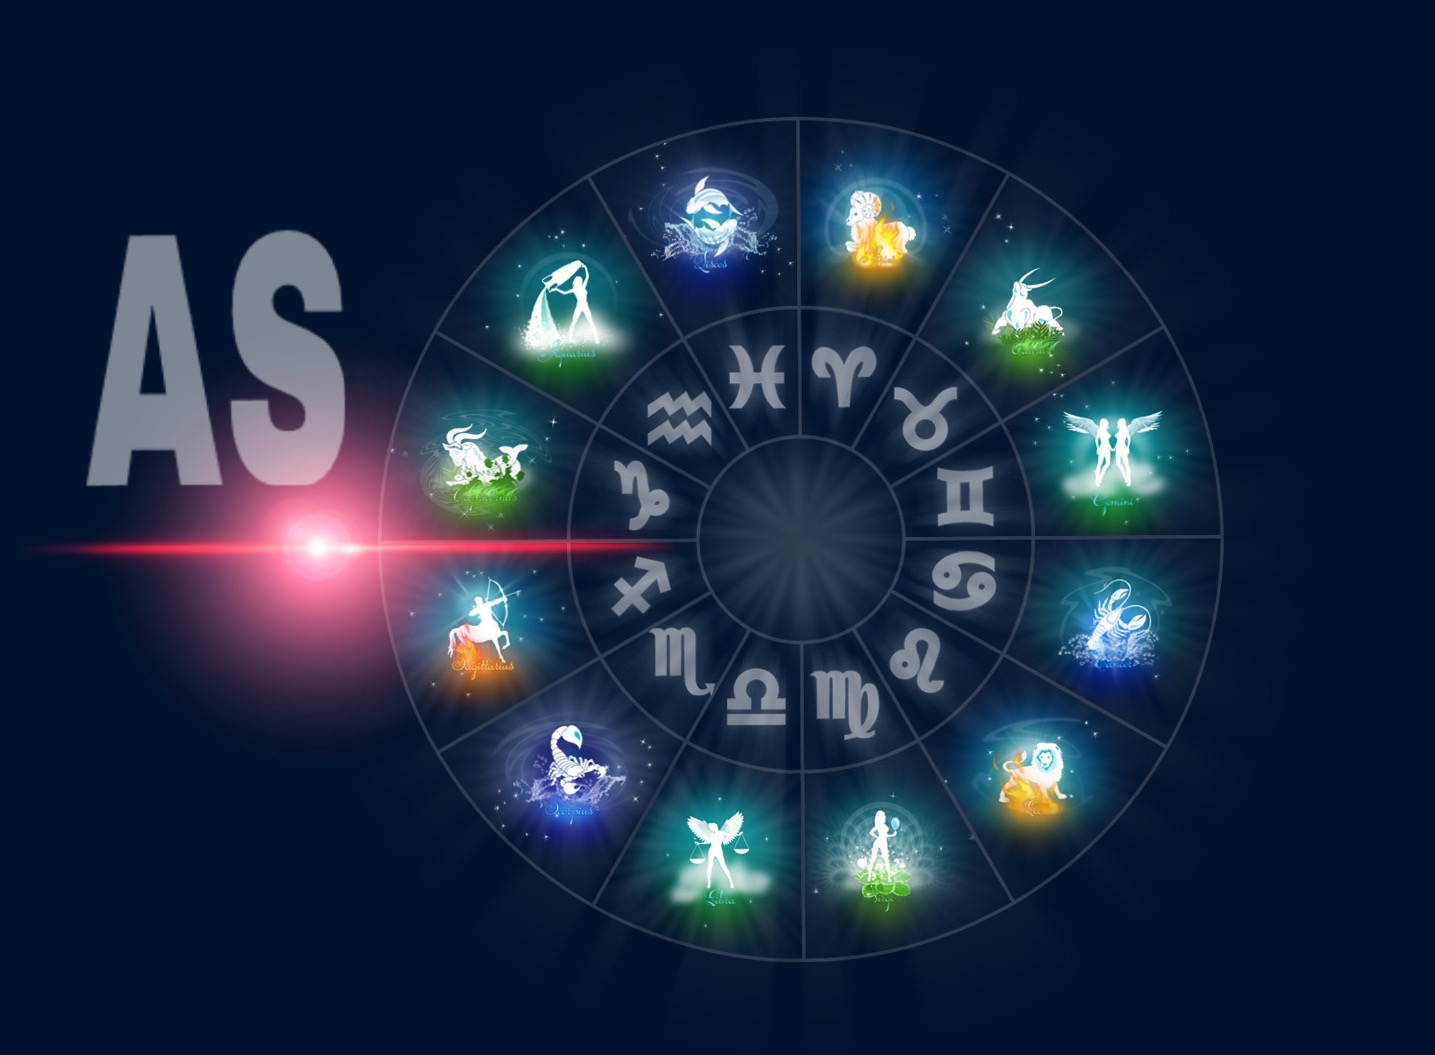 Ascendente astrologia segni zodiacali